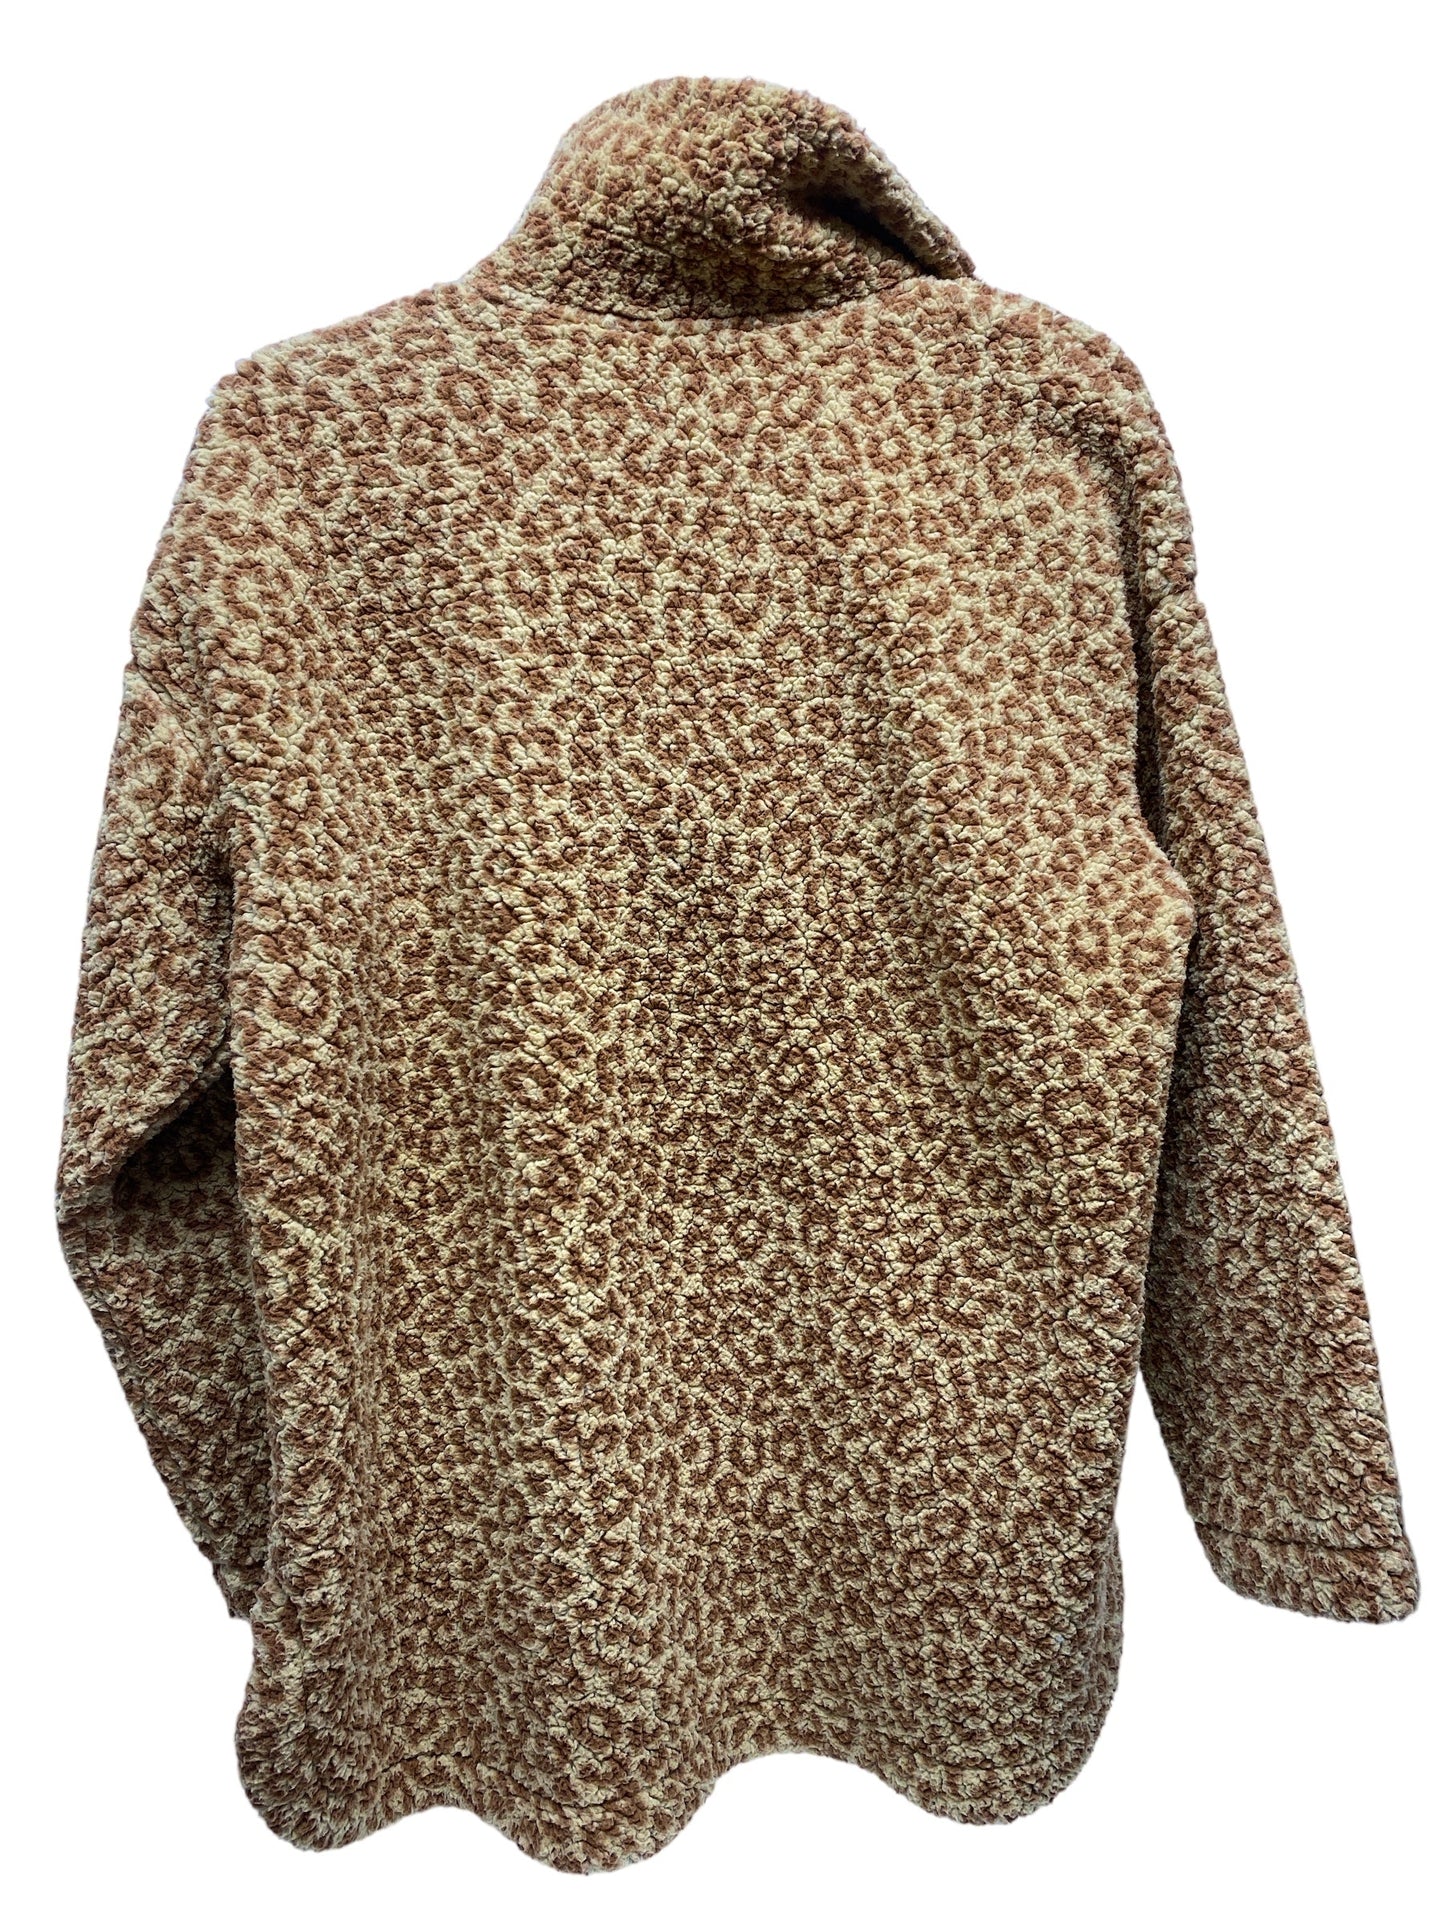 Jacket Fleece By Ann Taylor  Size: M